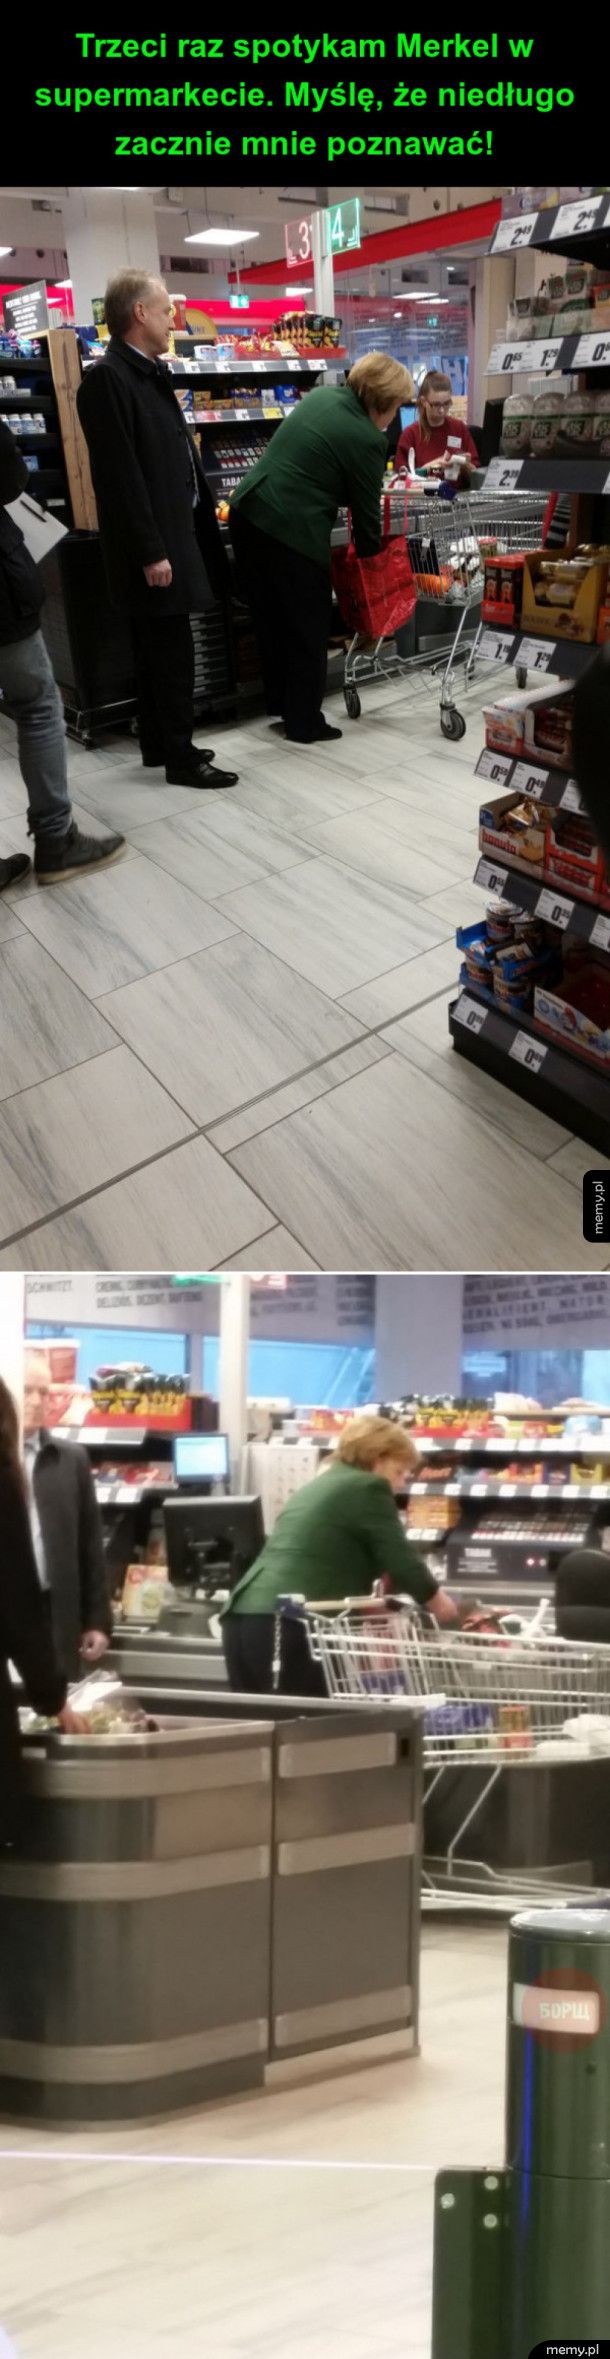 Spotkanie w supermarkecie